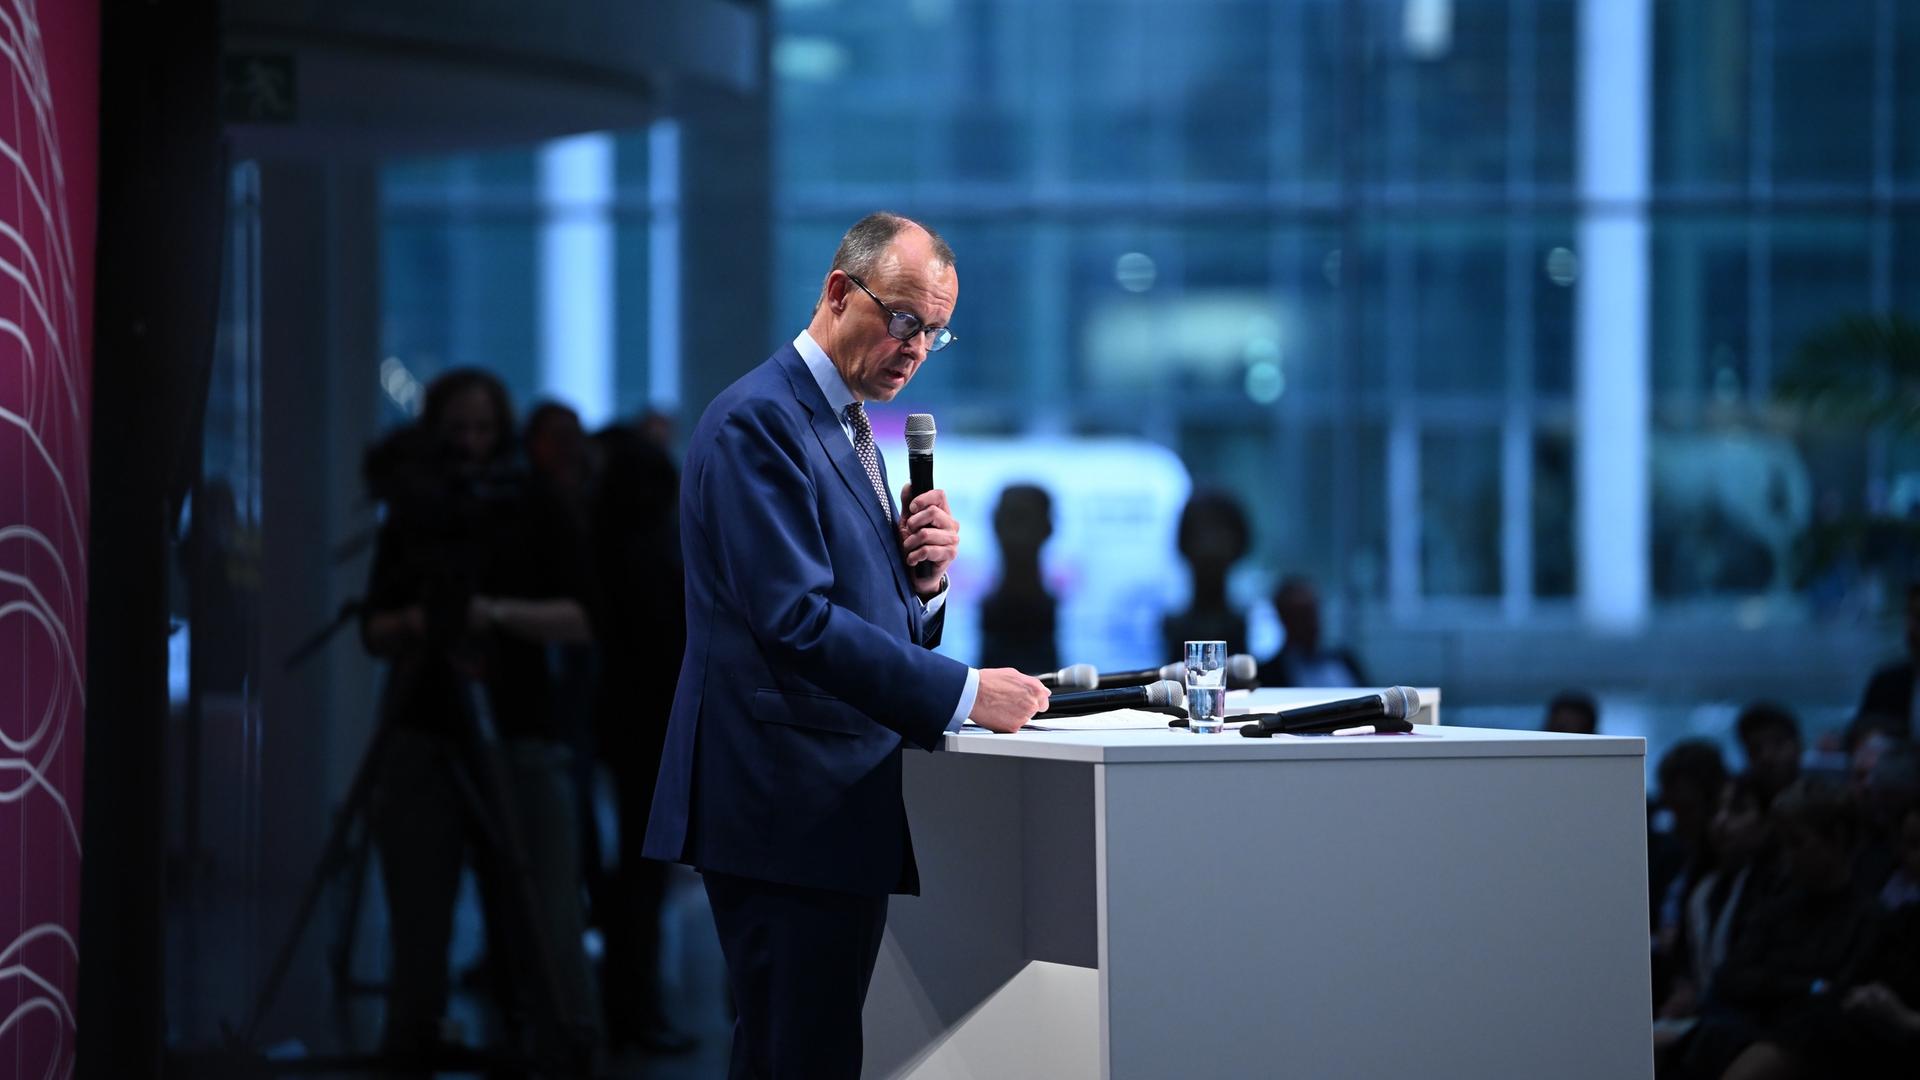 Friedrich Merz, CDU Bundesvorsitzender, steht im dunkelblauen Anzug an einem weißen Rednerpult, er hält ein Mikrofon in der Hand.